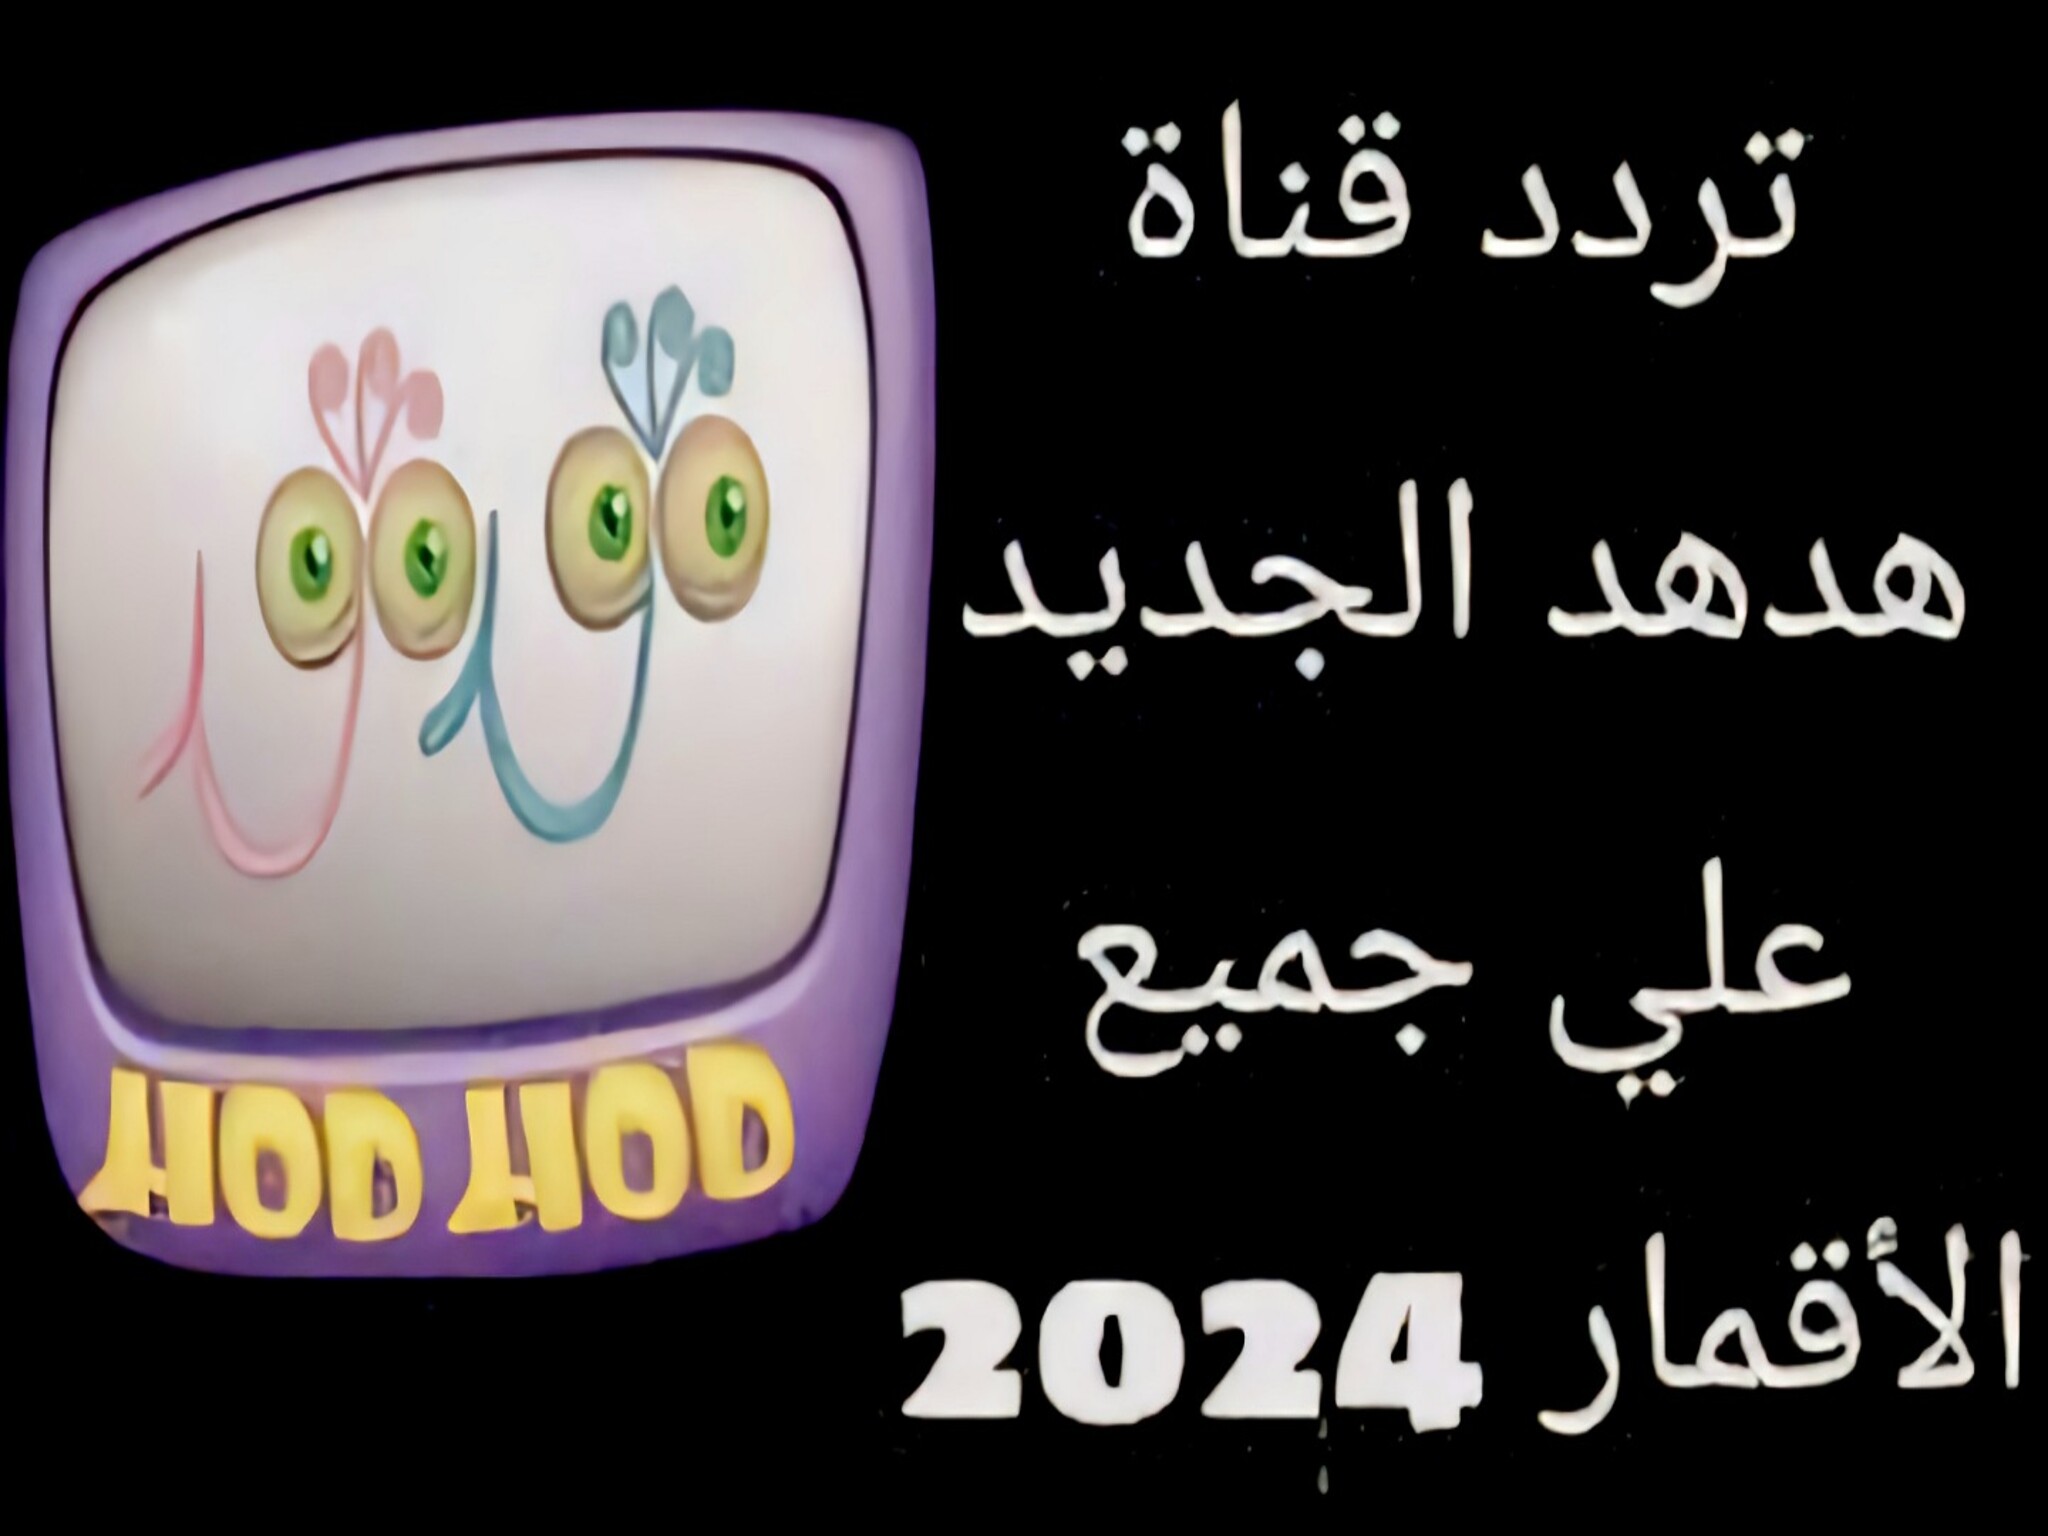 حدث الآن.. تردد قناة الهدهد للأطفال Hudhud TV الجديد 2024 على الأقمار الصناعية